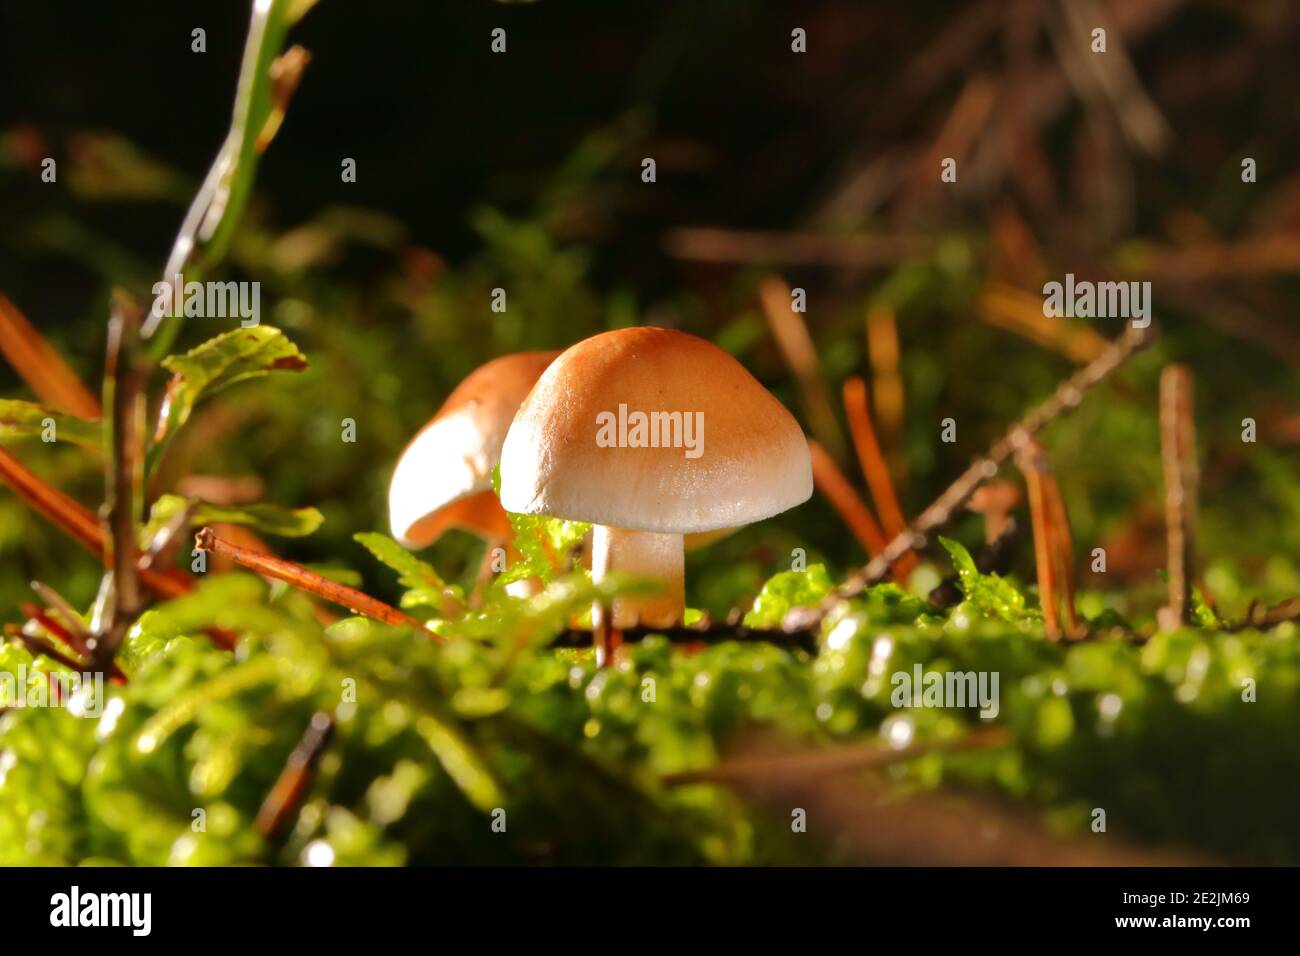 primo piano di un fungo tra muschio nella foresta a livello di superficie Foto Stock